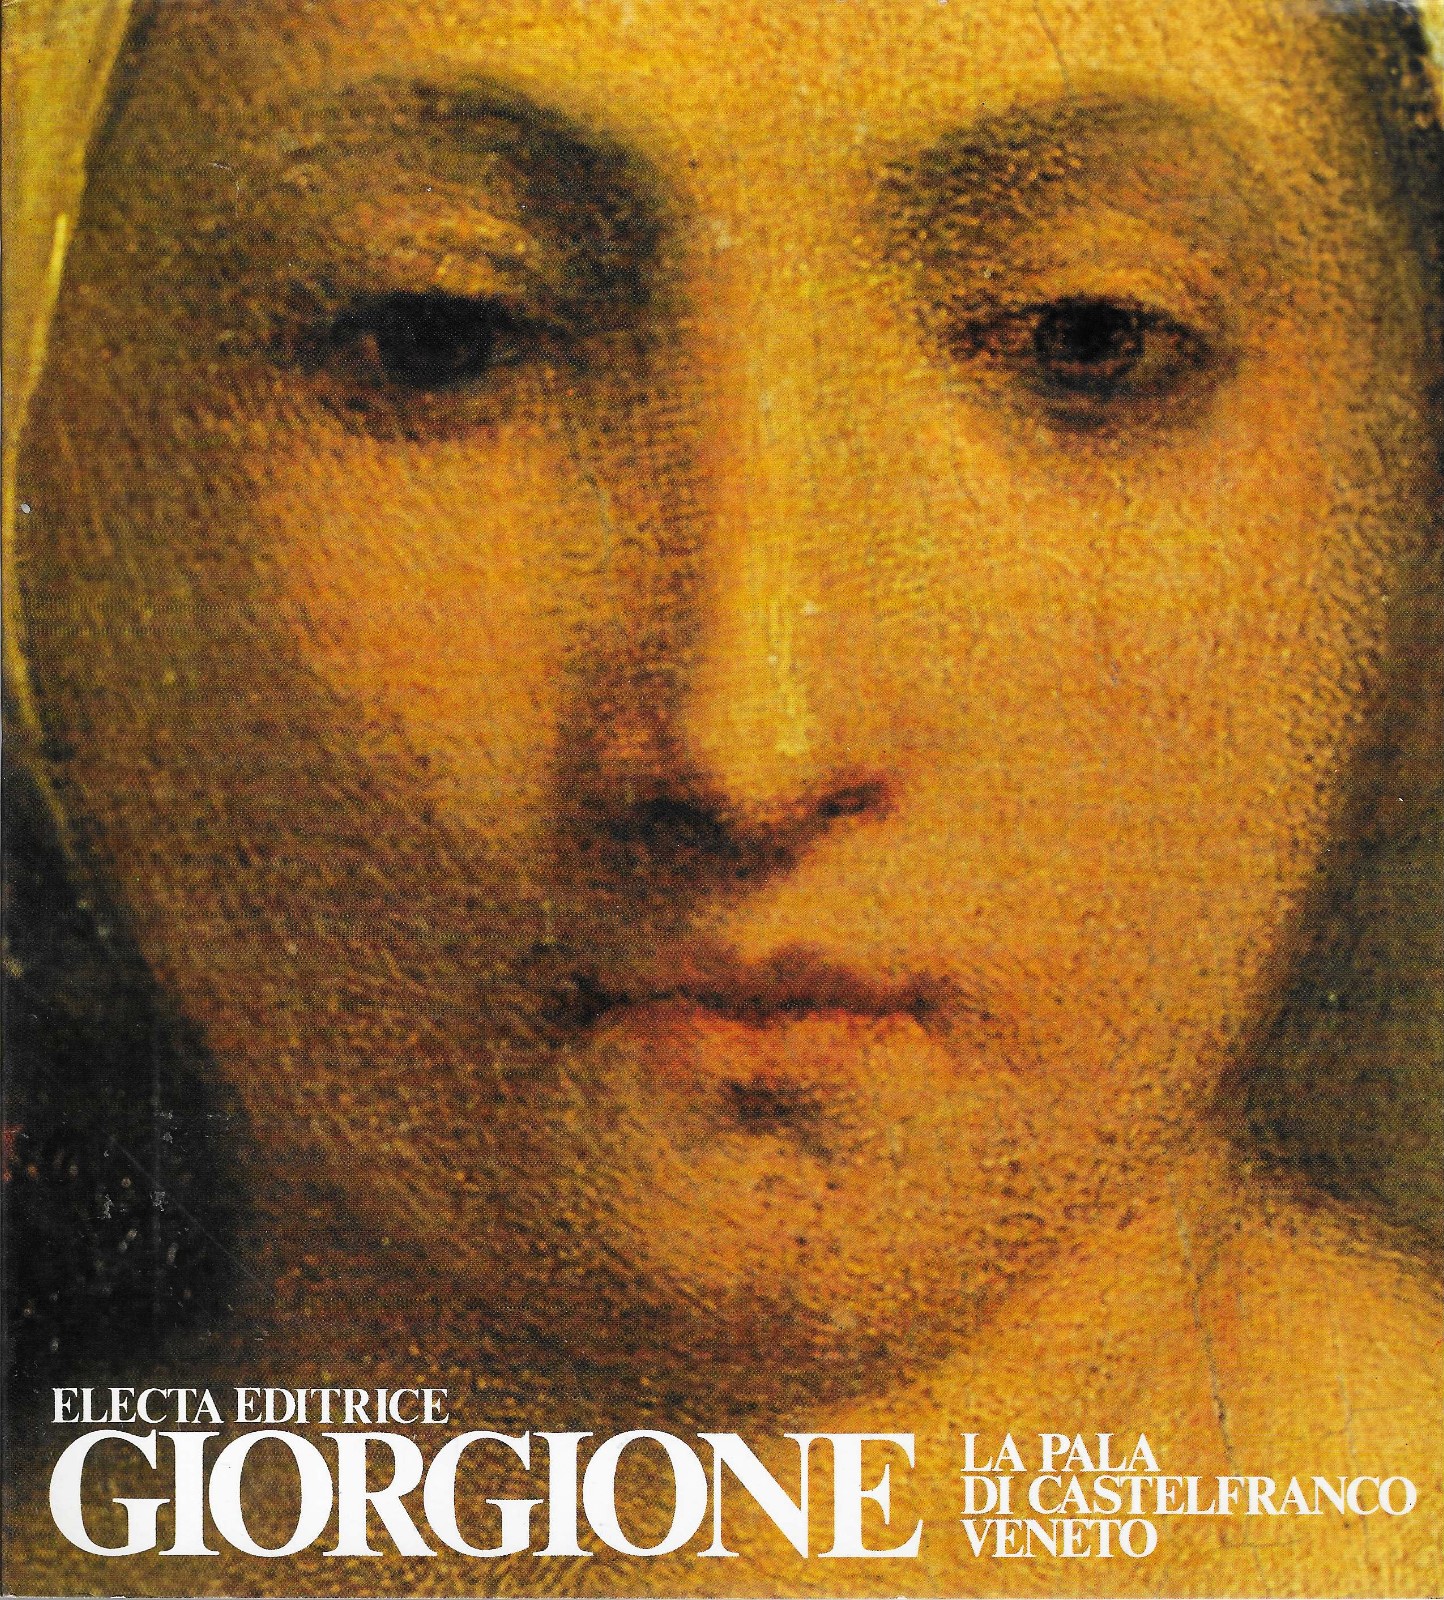 Giorgione La pala di Castelfranco Veneto